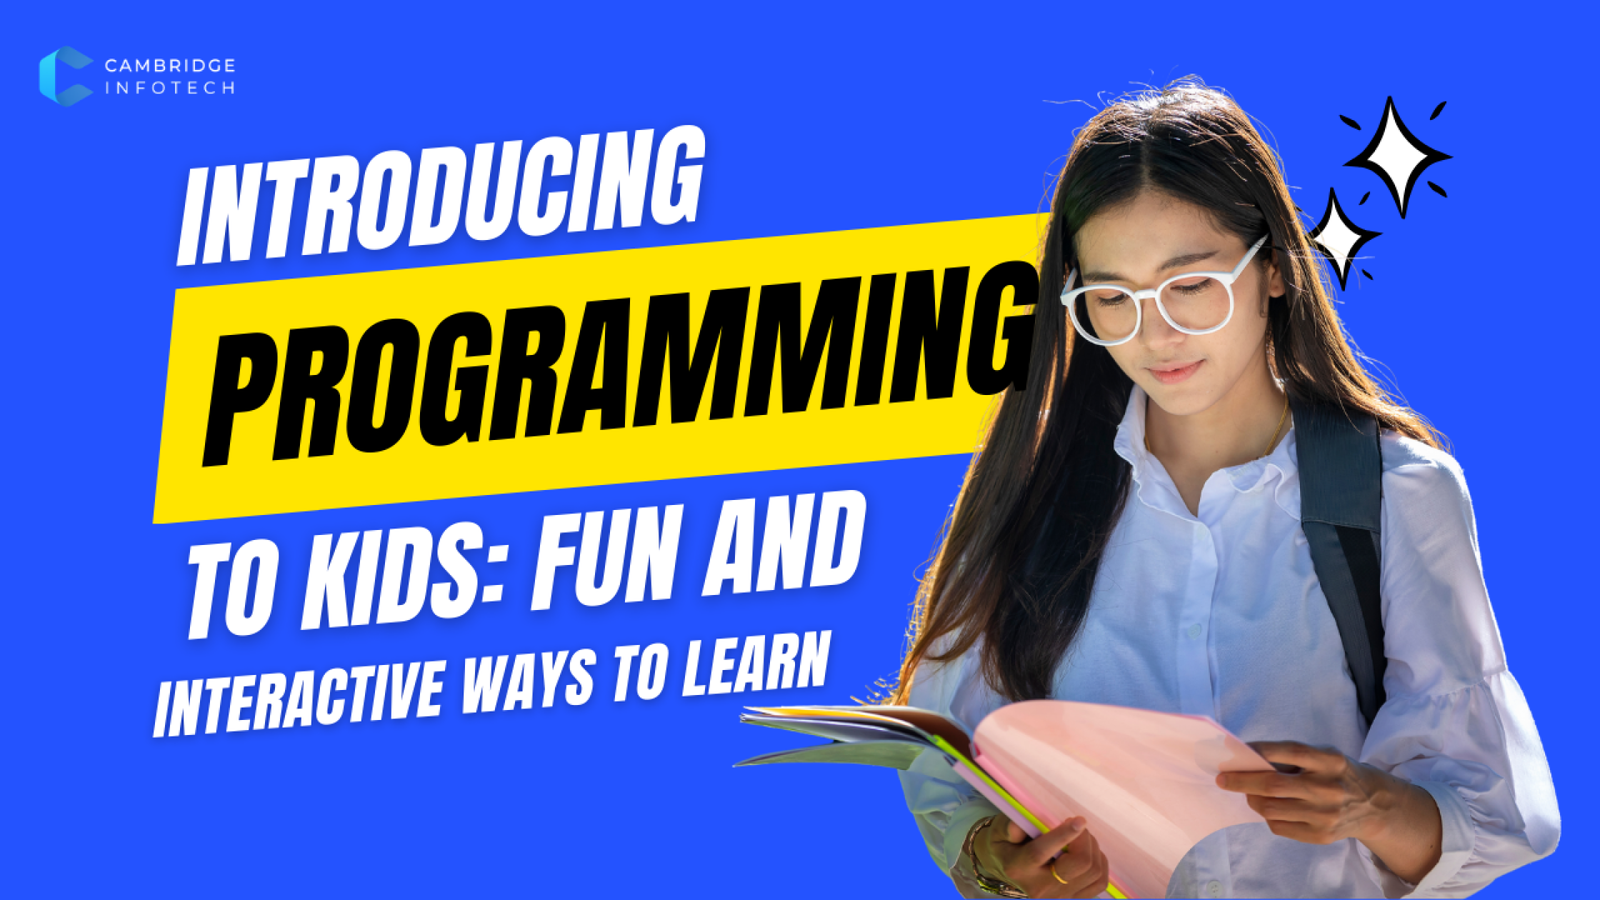 Programming For Kids